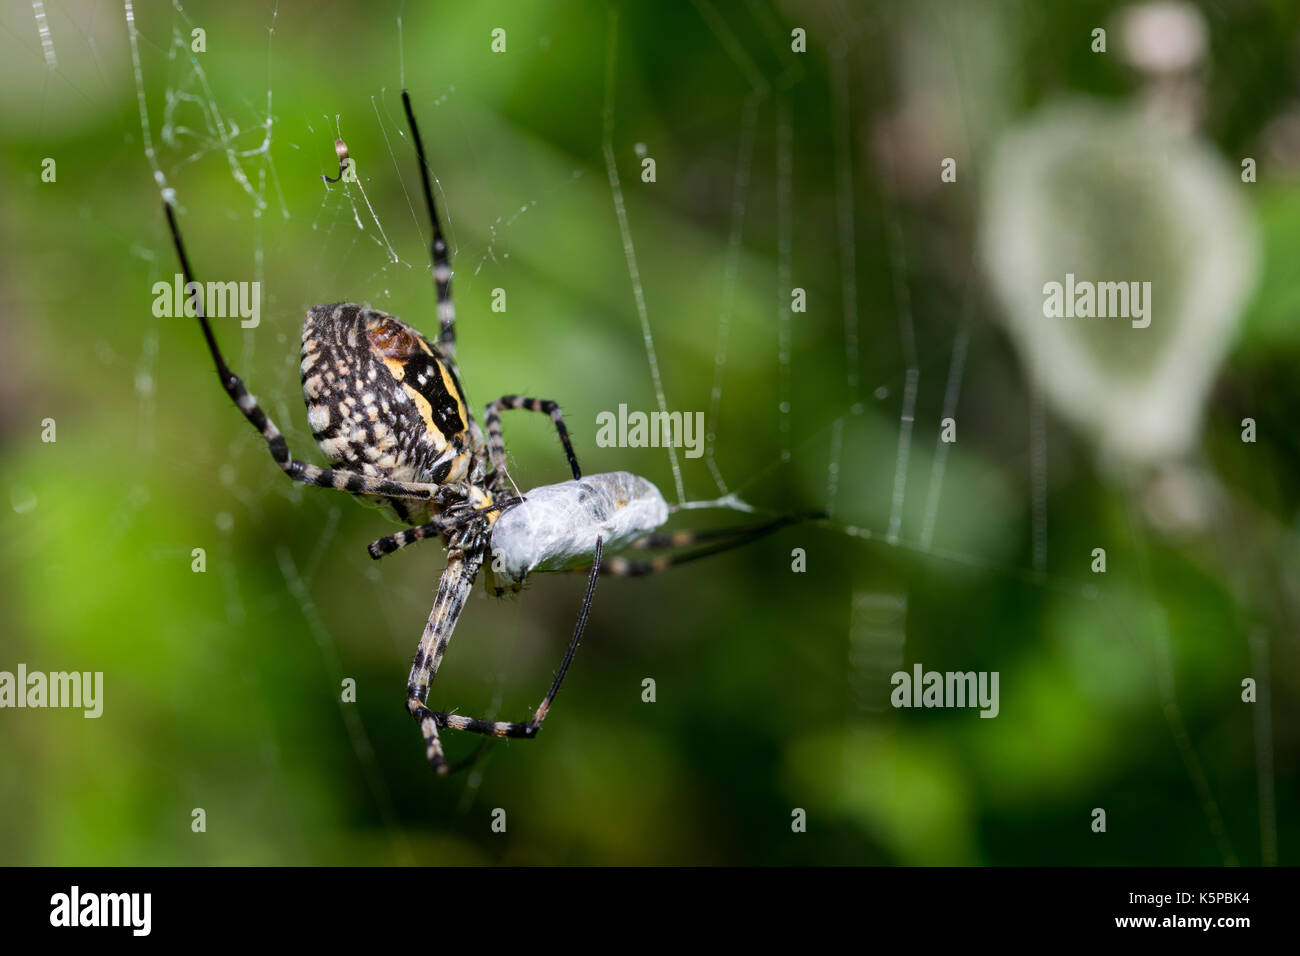 Una araña Argiope anillados (Argiope trifasciata) en su web acerca de comer su comida, probablemente una mosca, en un valle seco en Malta. Saco de huevos de araña es visible. Foto de stock